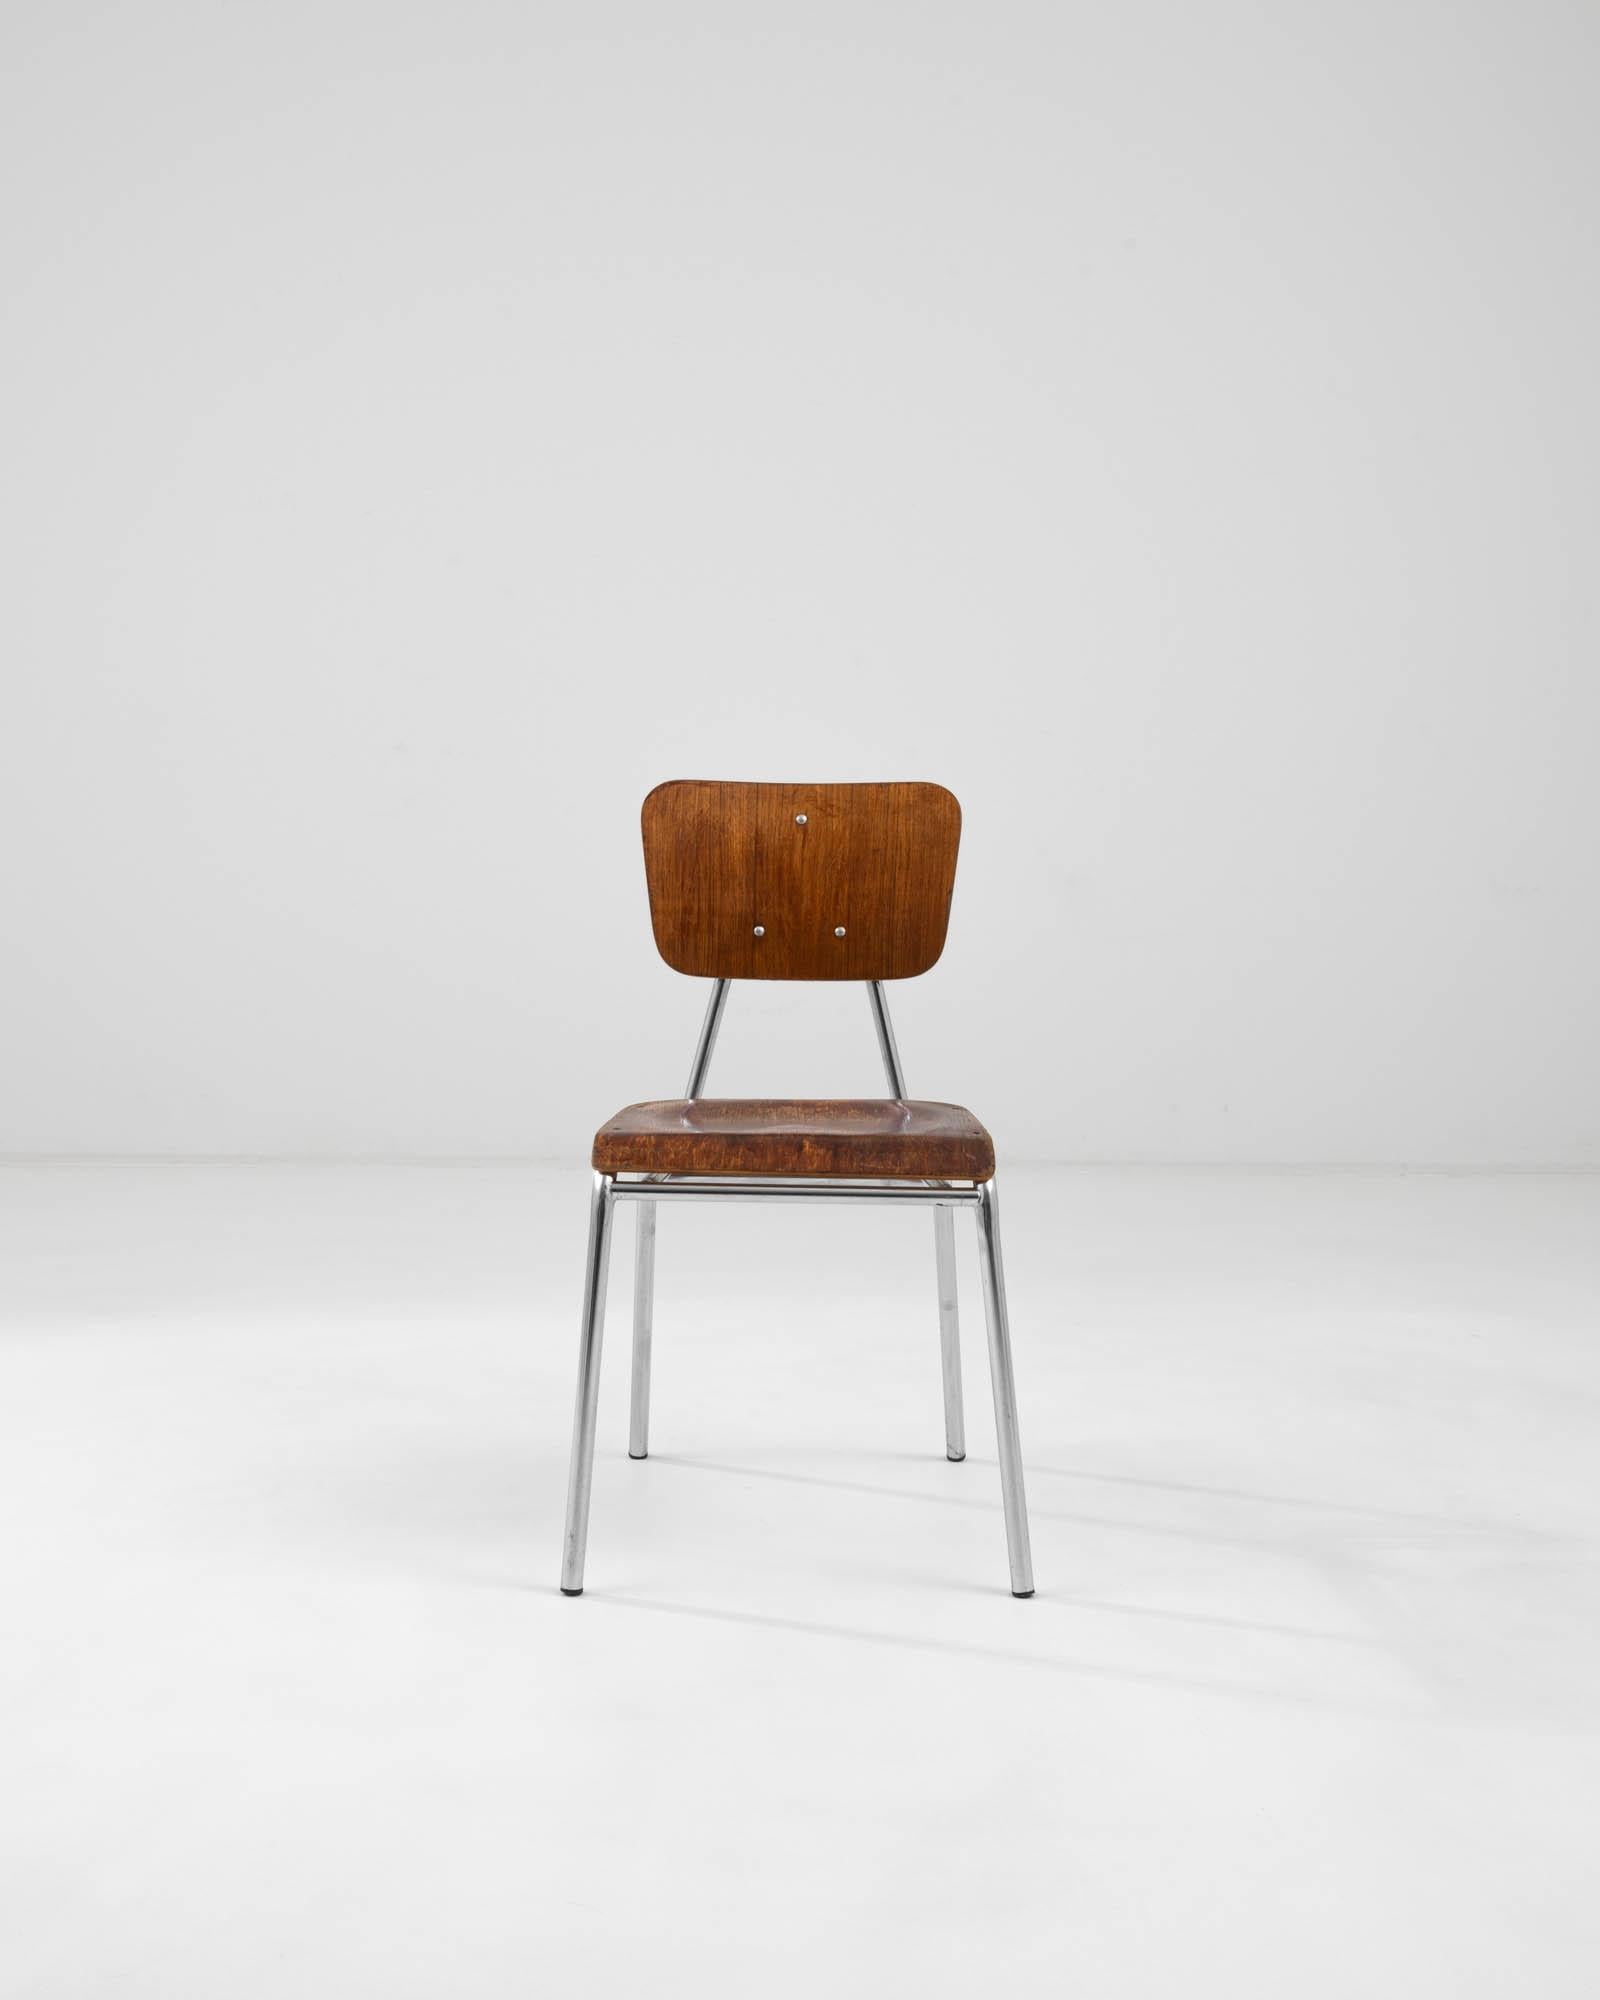 Chaise de salle à manger en bois créée en Allemagne au milieu du XXe siècle. Ornée et bien structurée, cette chaise de salle à manger élégante projette une image de calme et d'alerte, rappelant un type plus familier de siège de salle de classe,